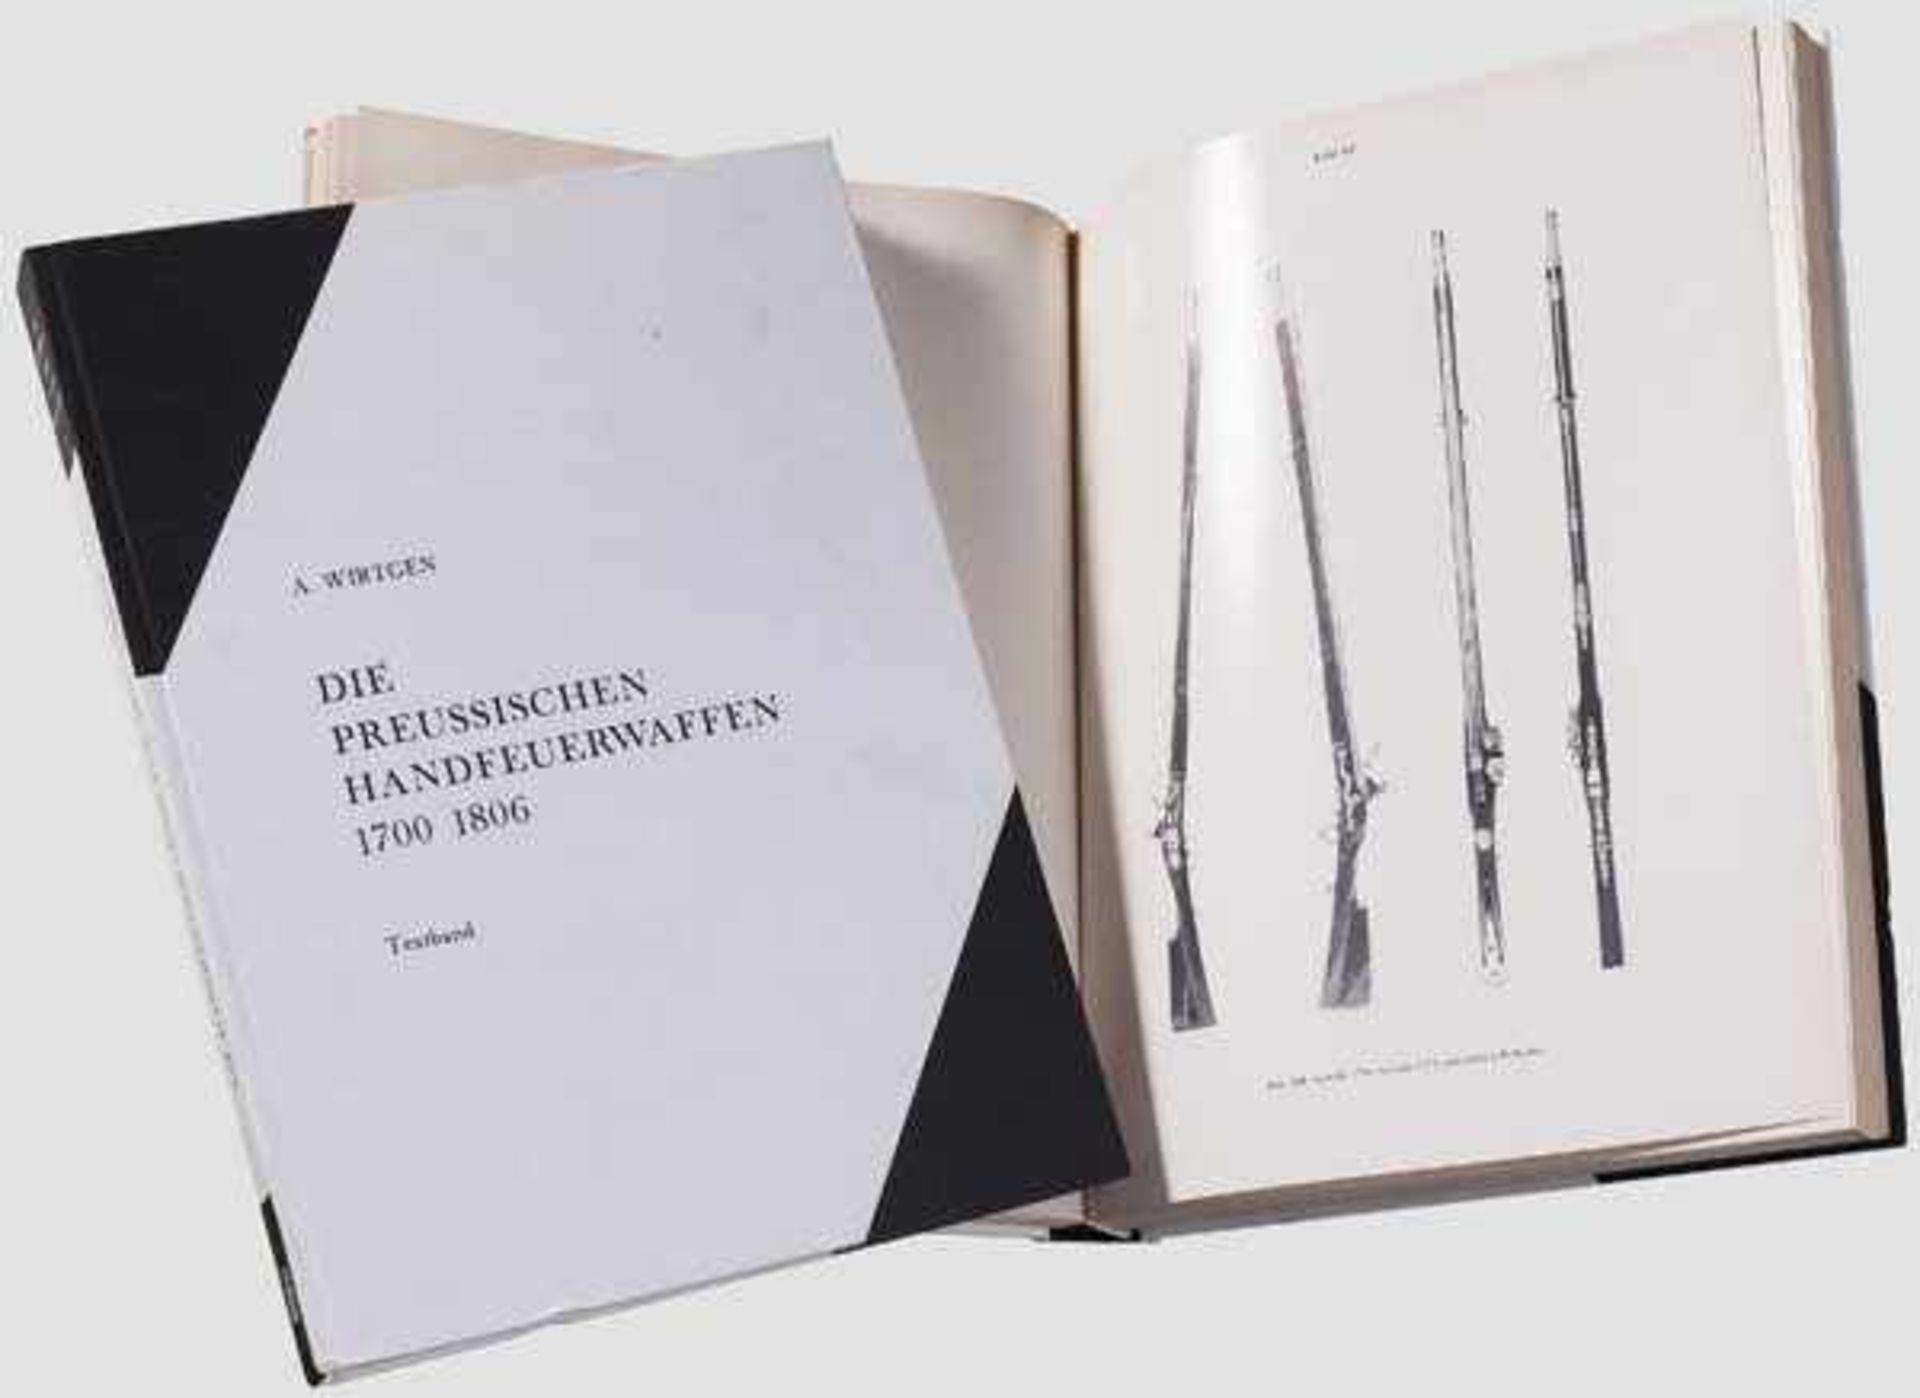 Wirtgen, Die Preussischen Handfeuerwaffen 1700 - 1806 Osnabrück 1976. Zwei Bände in schwarz-weißem